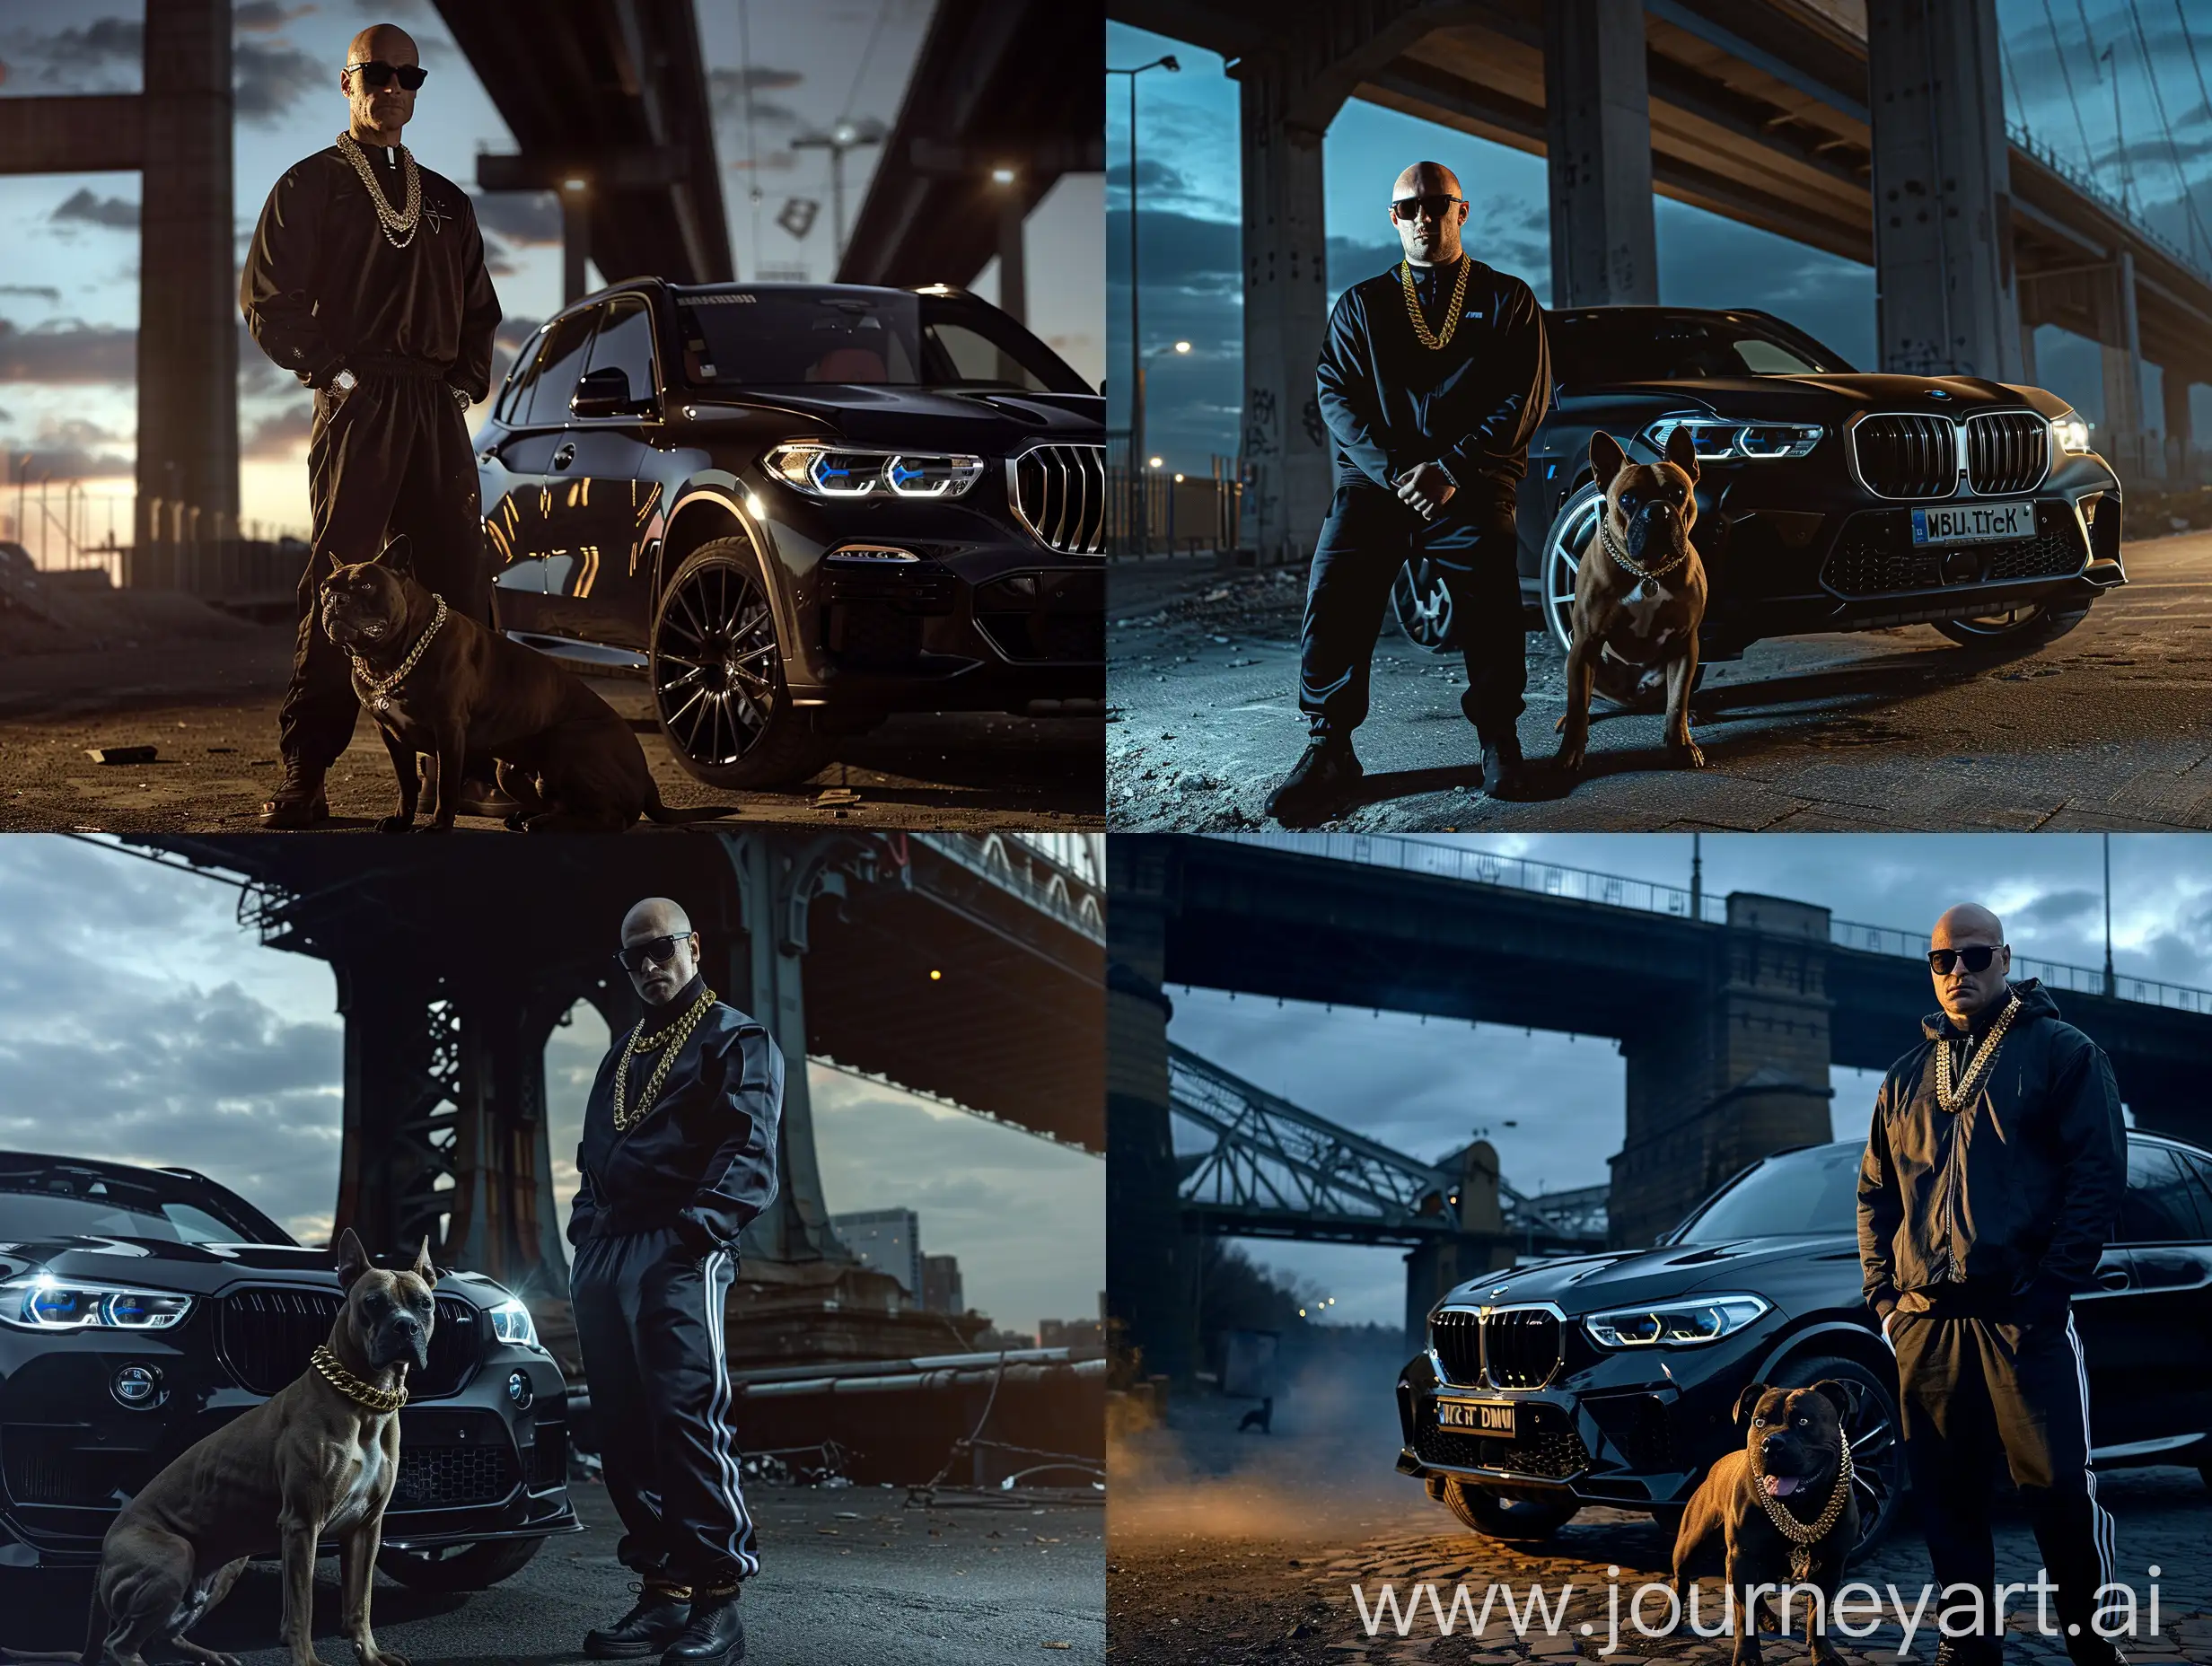 Неизвестный лысый мужчина, тёмные очки, спортивный костюм, золотая цепочка на шее, рядом с ним питбуль, вечер, чёрный BMW x5m, действие происходит под мостом, реализм